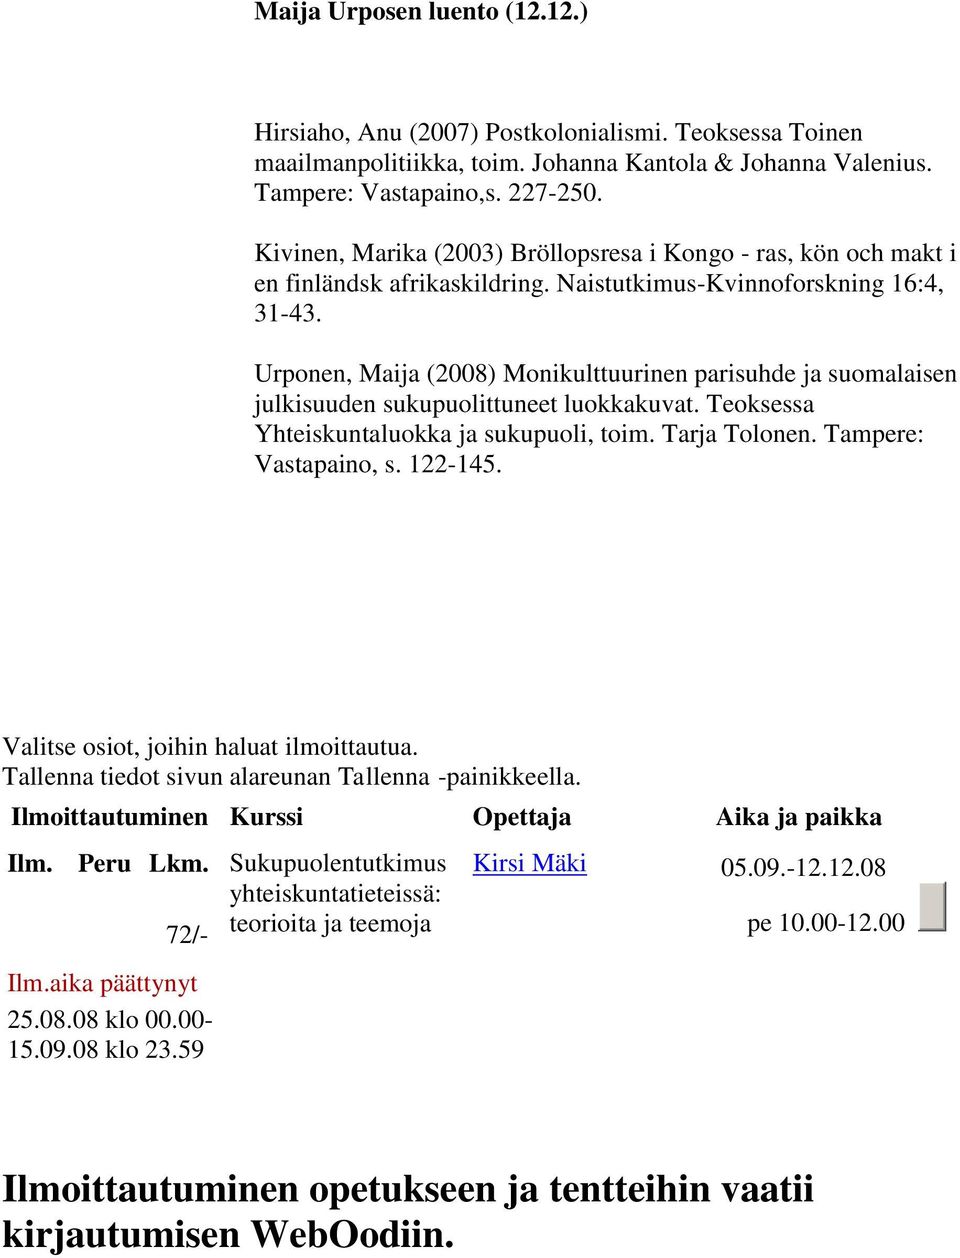 Urponen, Maija (2008) Monikulttuurinen parisuhde ja suomalaisen julkisuuden sukupuolittuneet luokkakuvat. Teoksessa Yhteiskuntaluokka ja sukupuoli, toim. Tarja Tolonen. Tampere: Vastapaino, s.